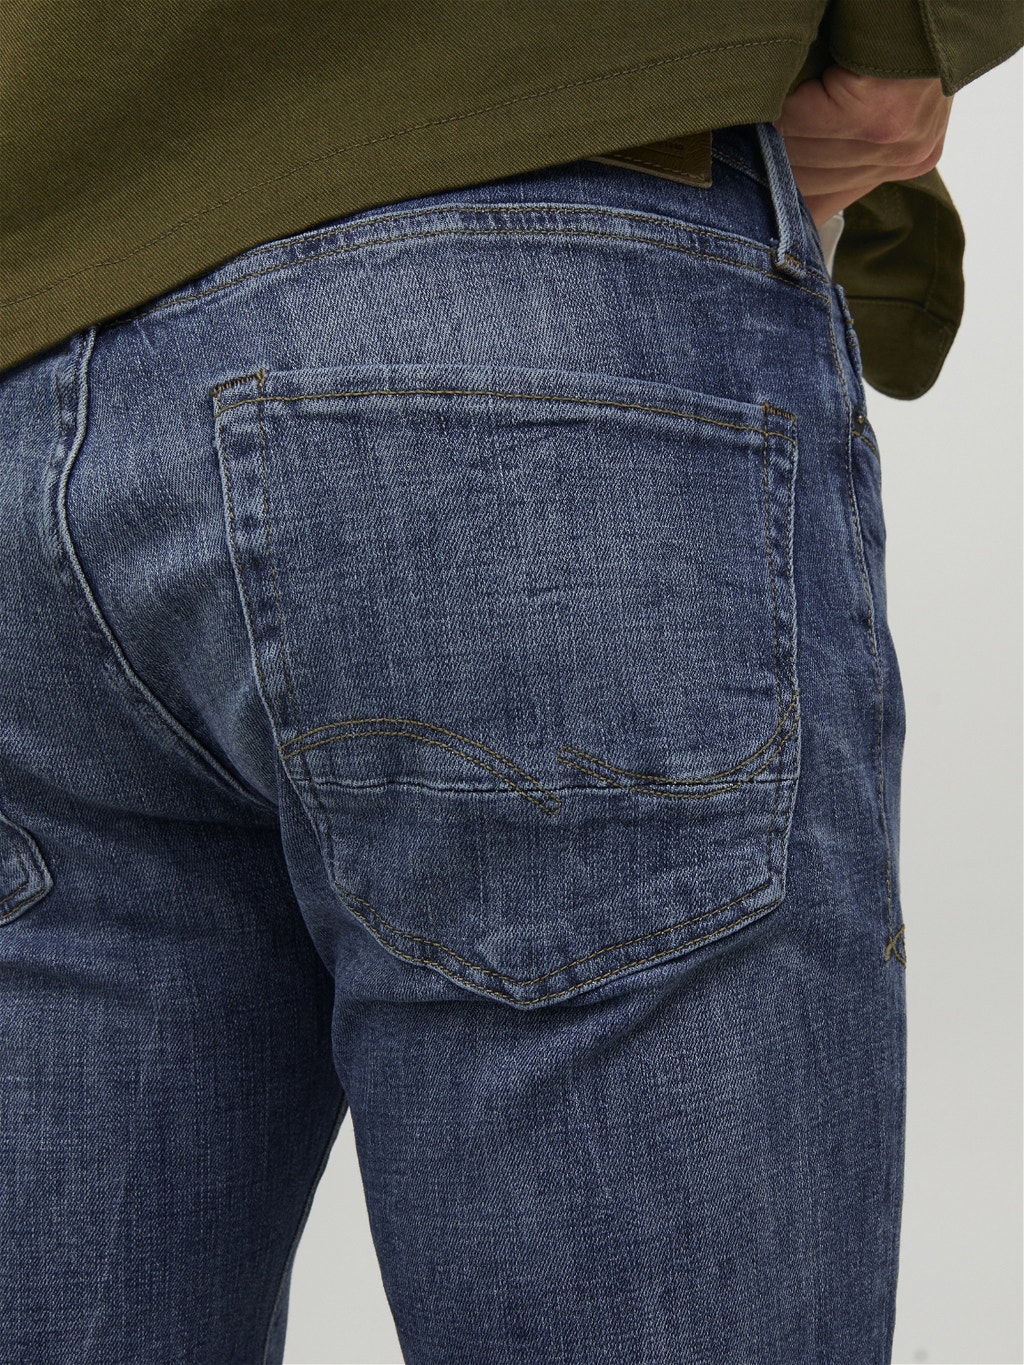 lila veronderstellen kraan Tim Vintage CJ 336 Slim/straight fit jeans with 20% discount! | Jack & Jones ®